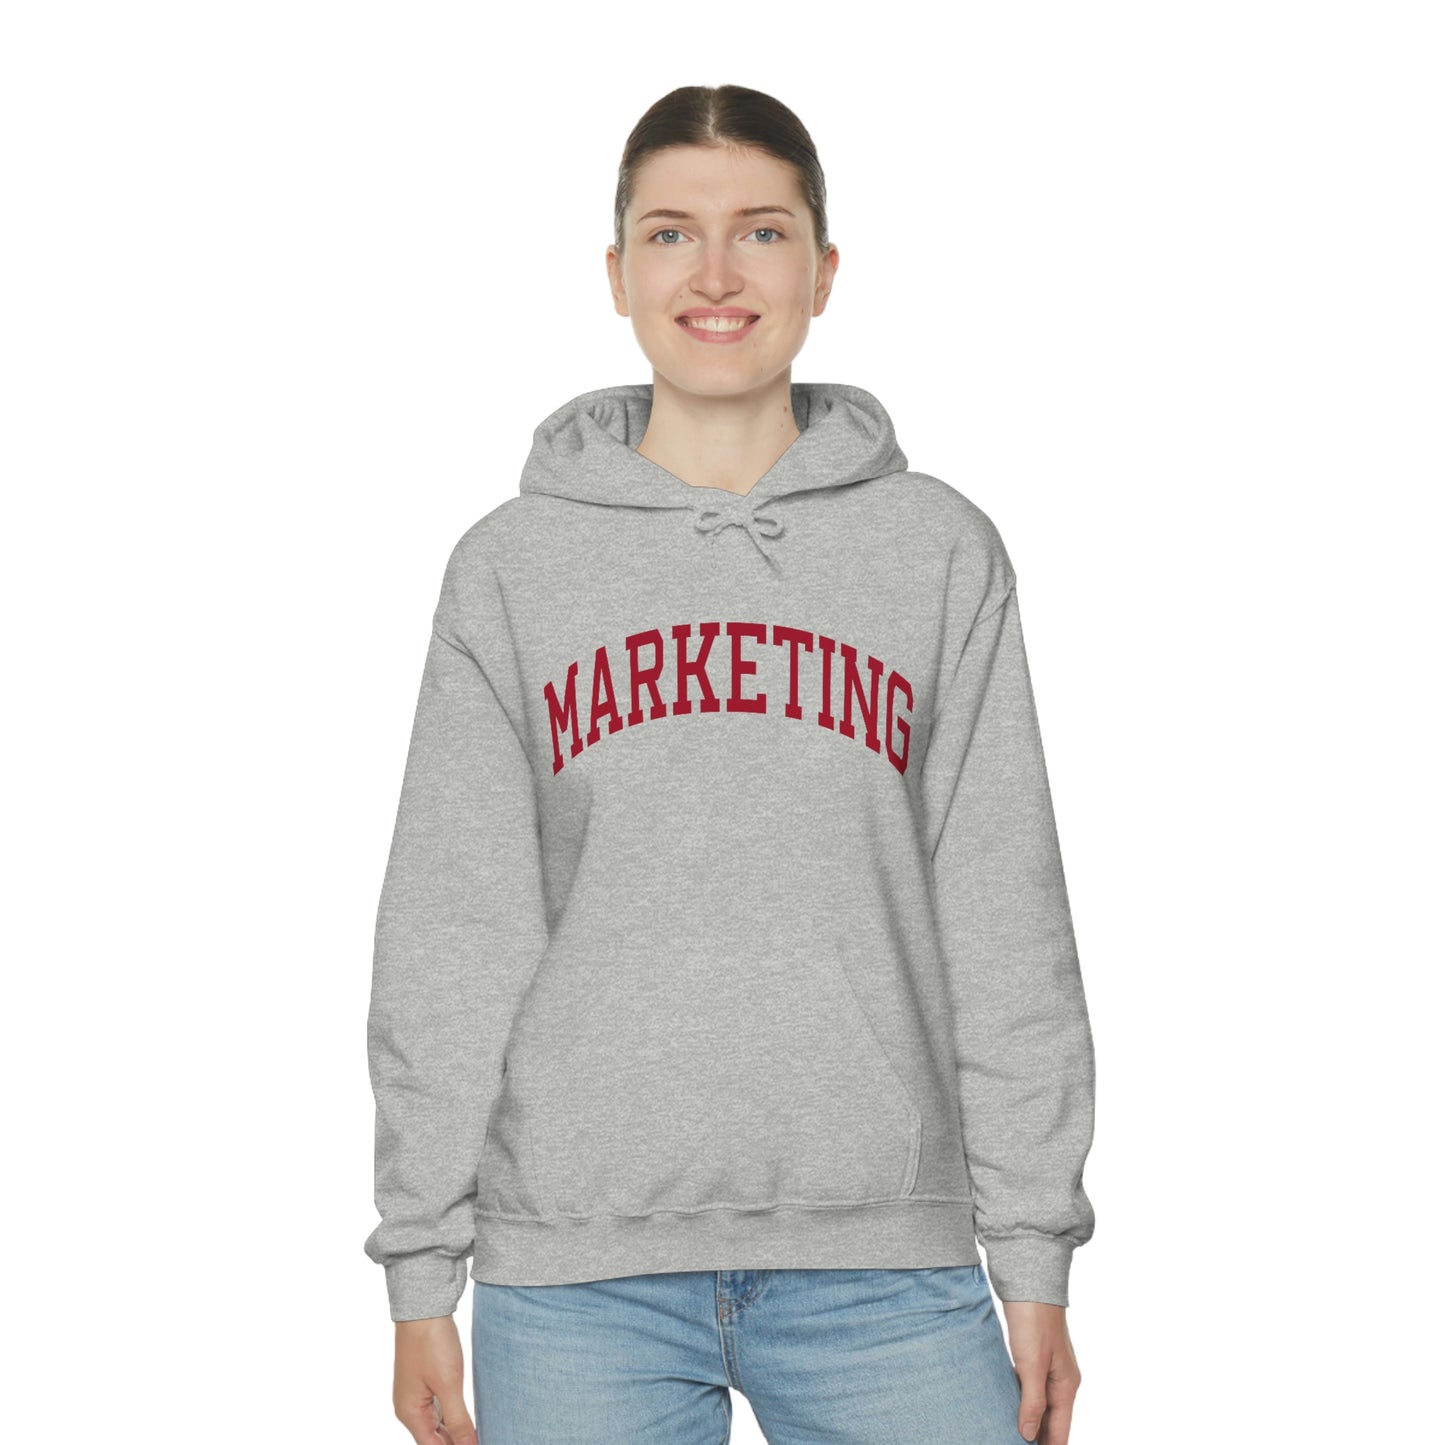 Cambridge Marketing Hooded Sweatshirt